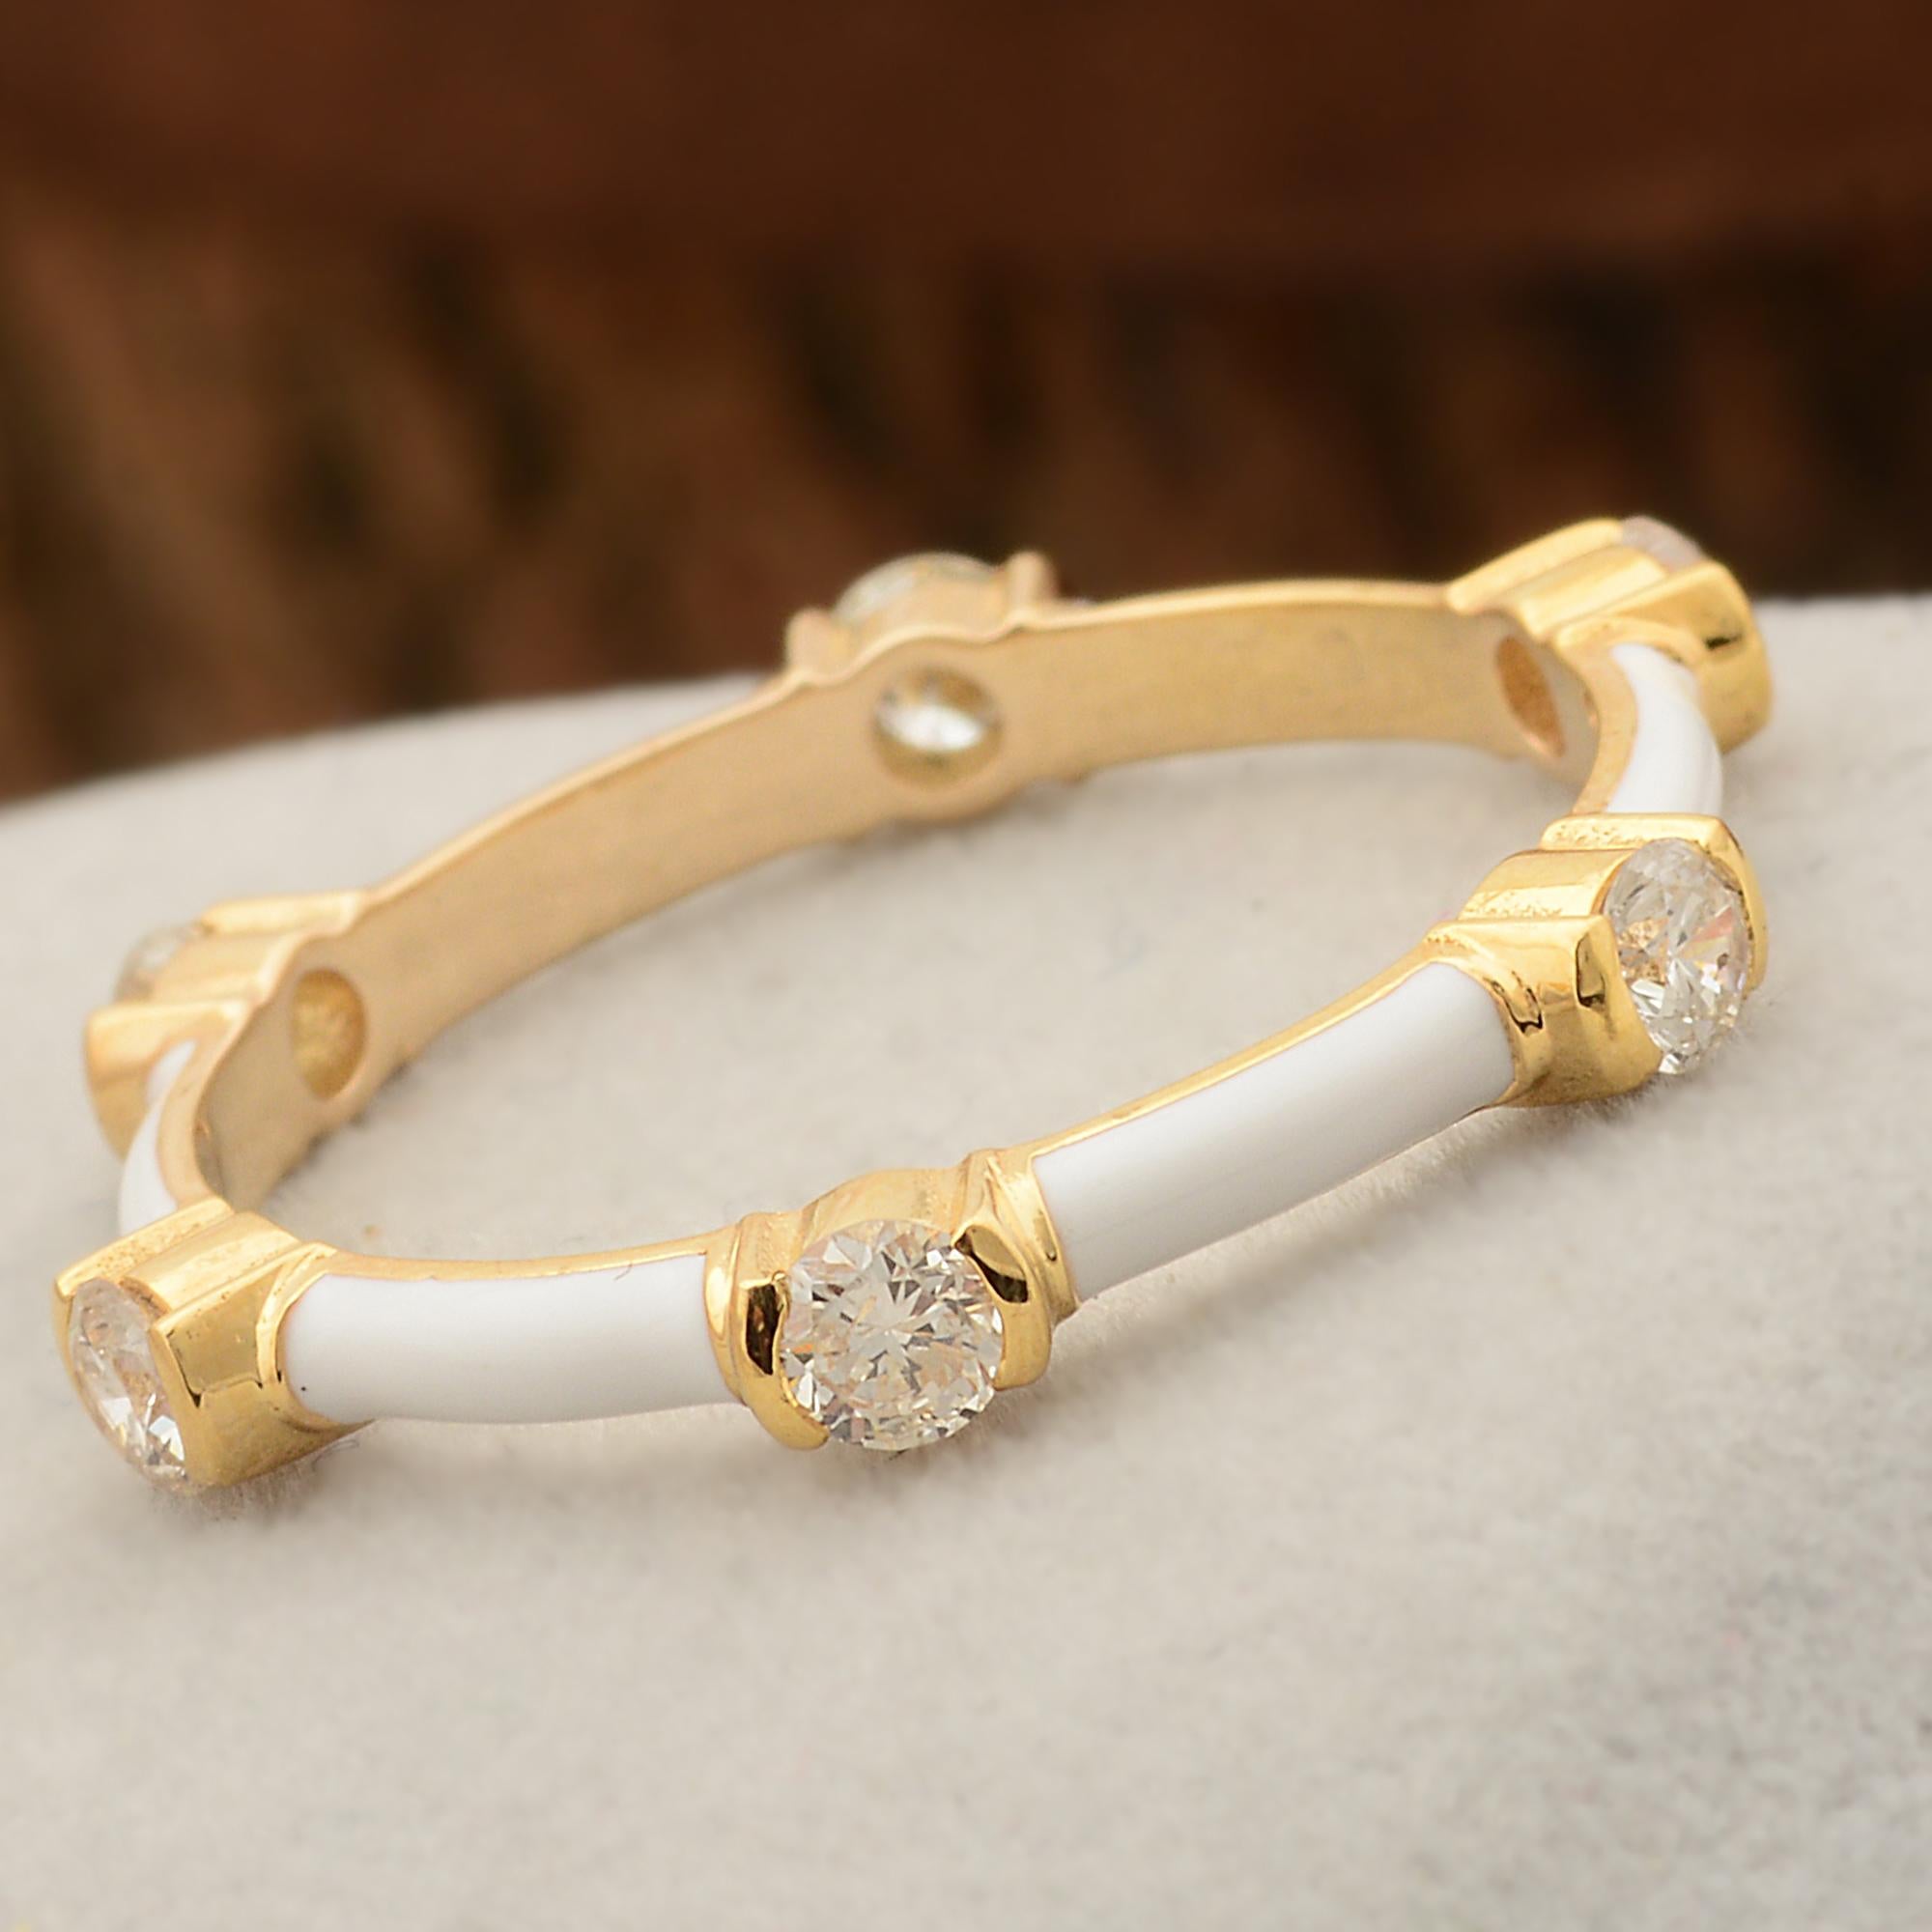 Dieser mit viel Liebe zum Detail handgefertigte Diamant-Emaille-Ring ist ein wahrer Beweis für die Kunstfertigkeit der Schmuckherstellung. Der warme Glanz der Fassung aus 18 Karat Gelbgold ist die perfekte Ergänzung zu dem schillernden Diamanten und